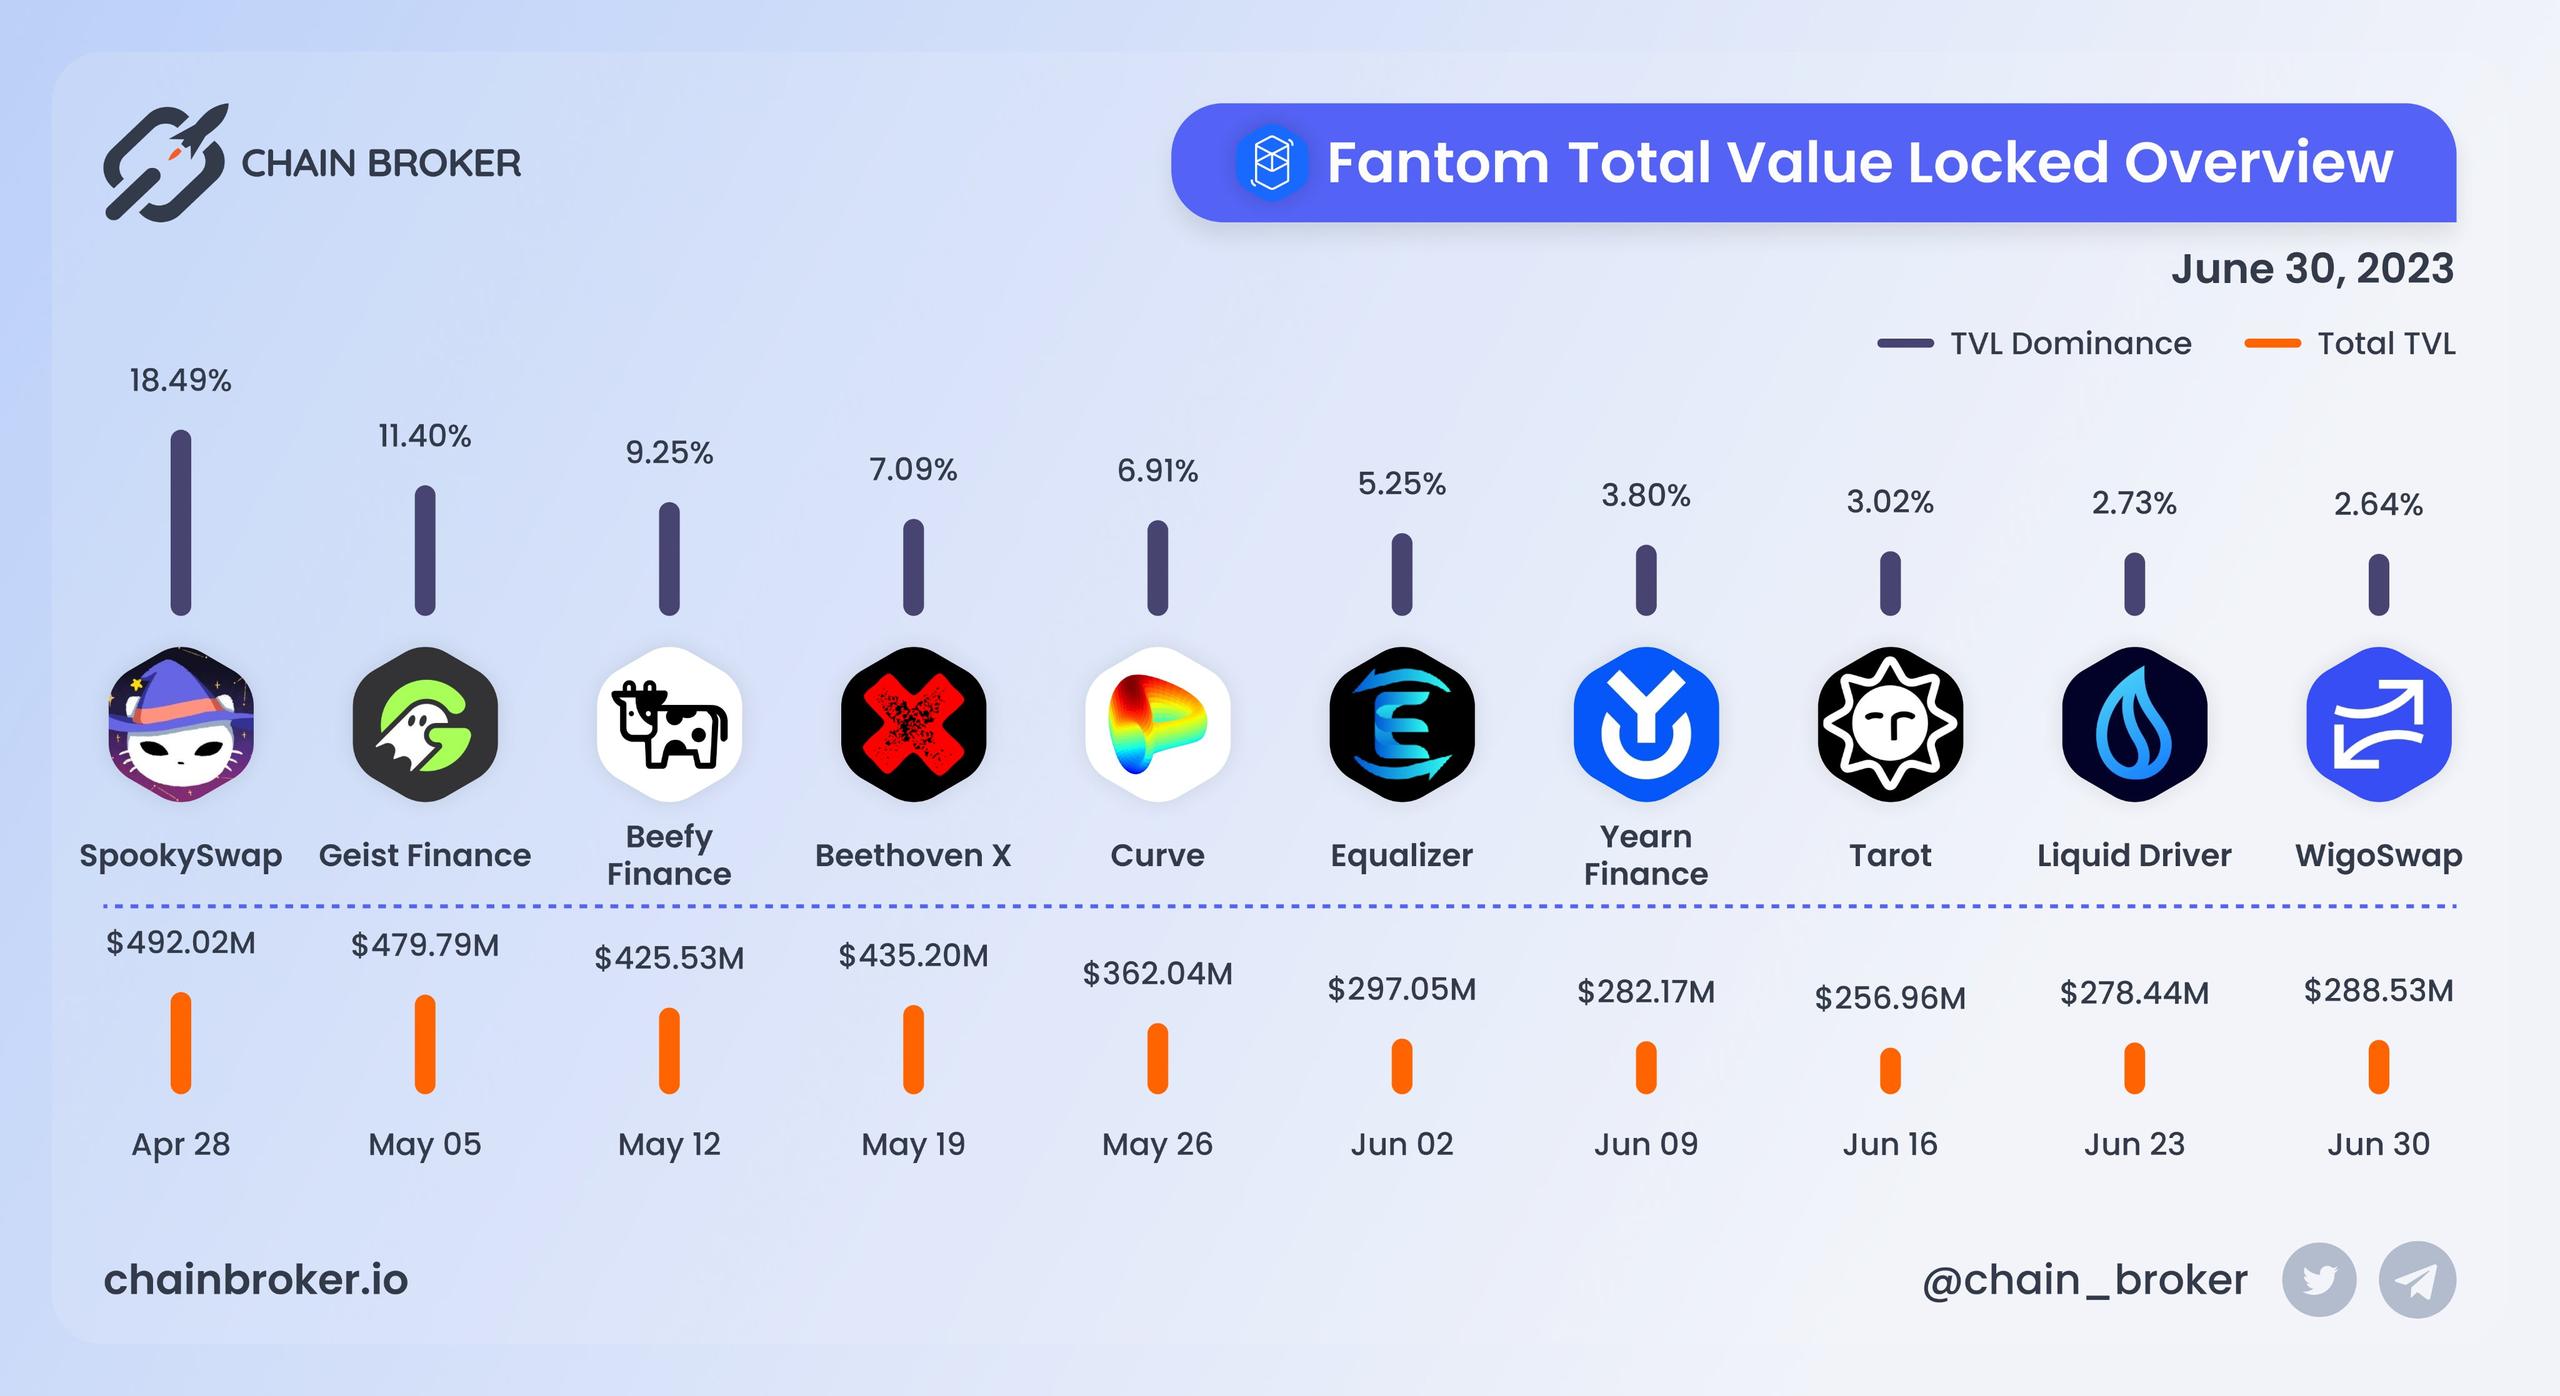 Fantom total value locked overview